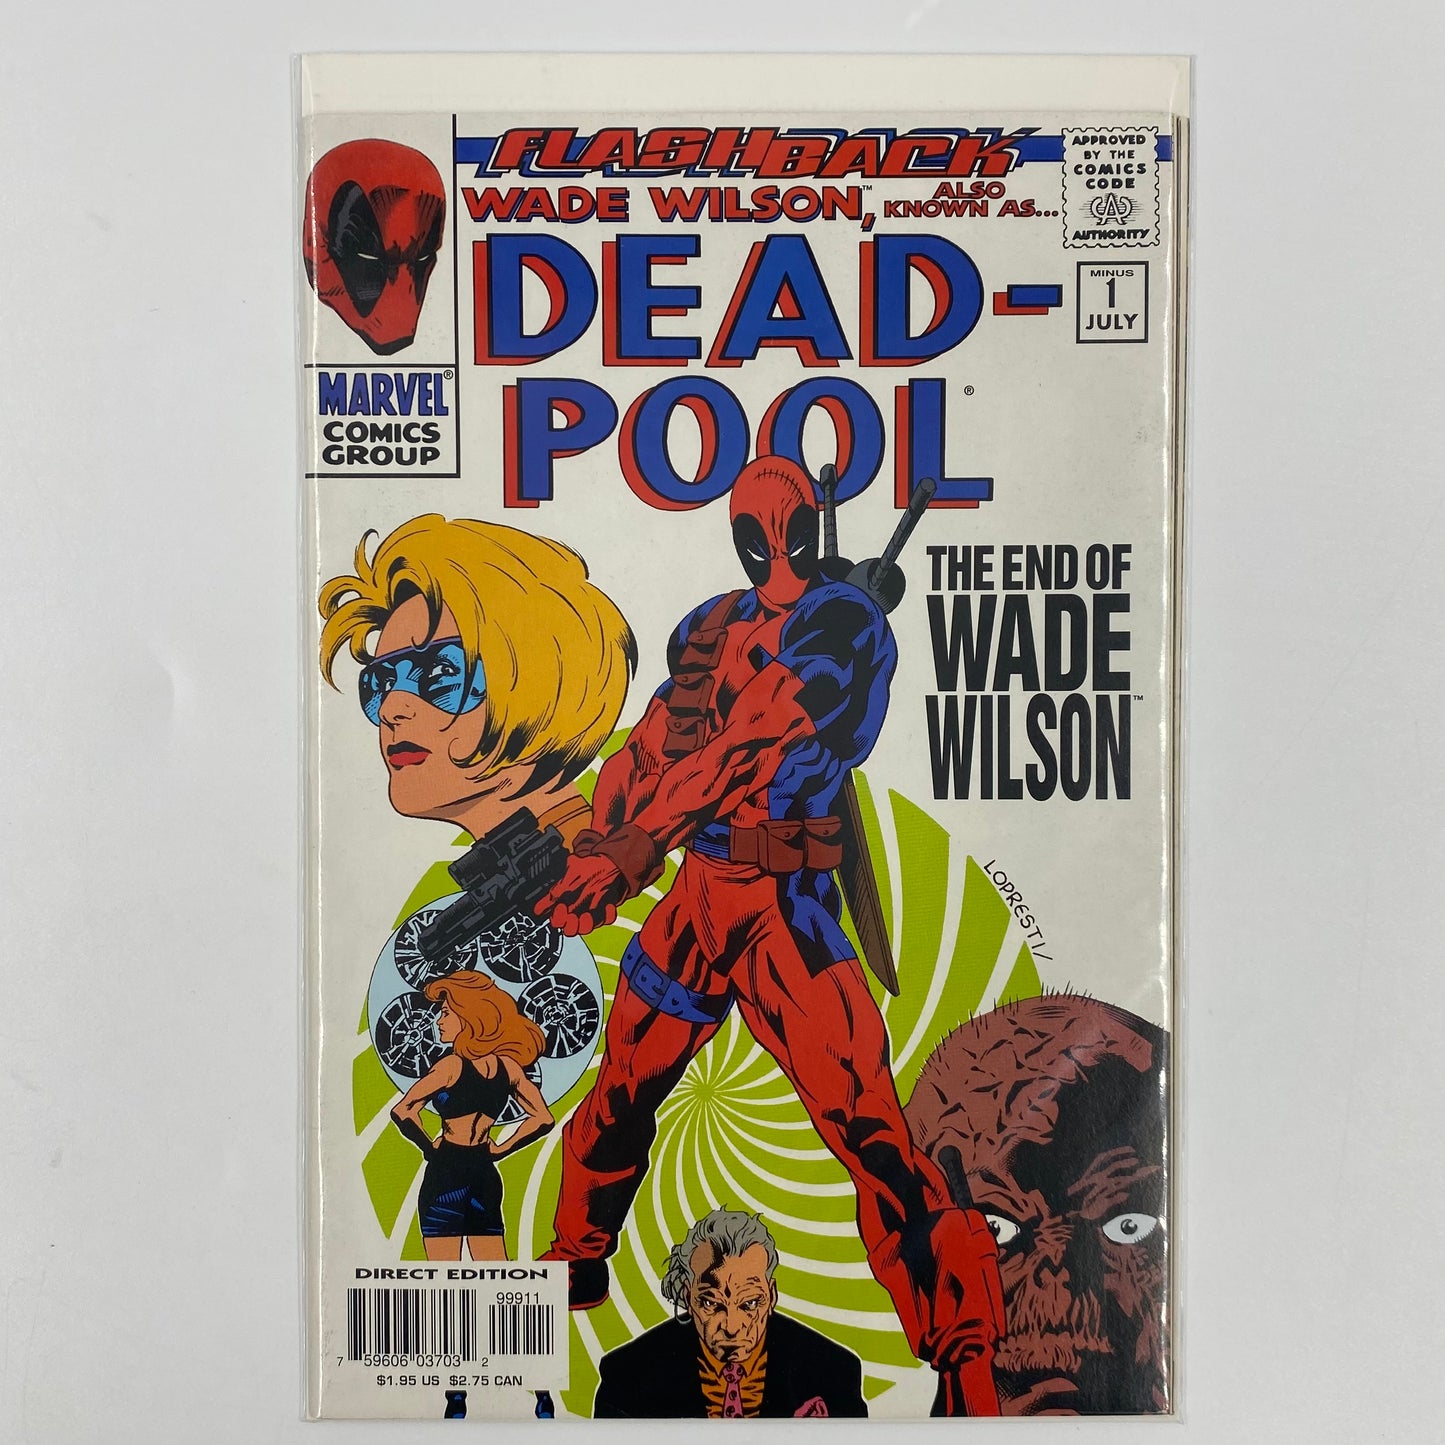 Deadpool #-1 "MINUS ONE" (1997) Marvel